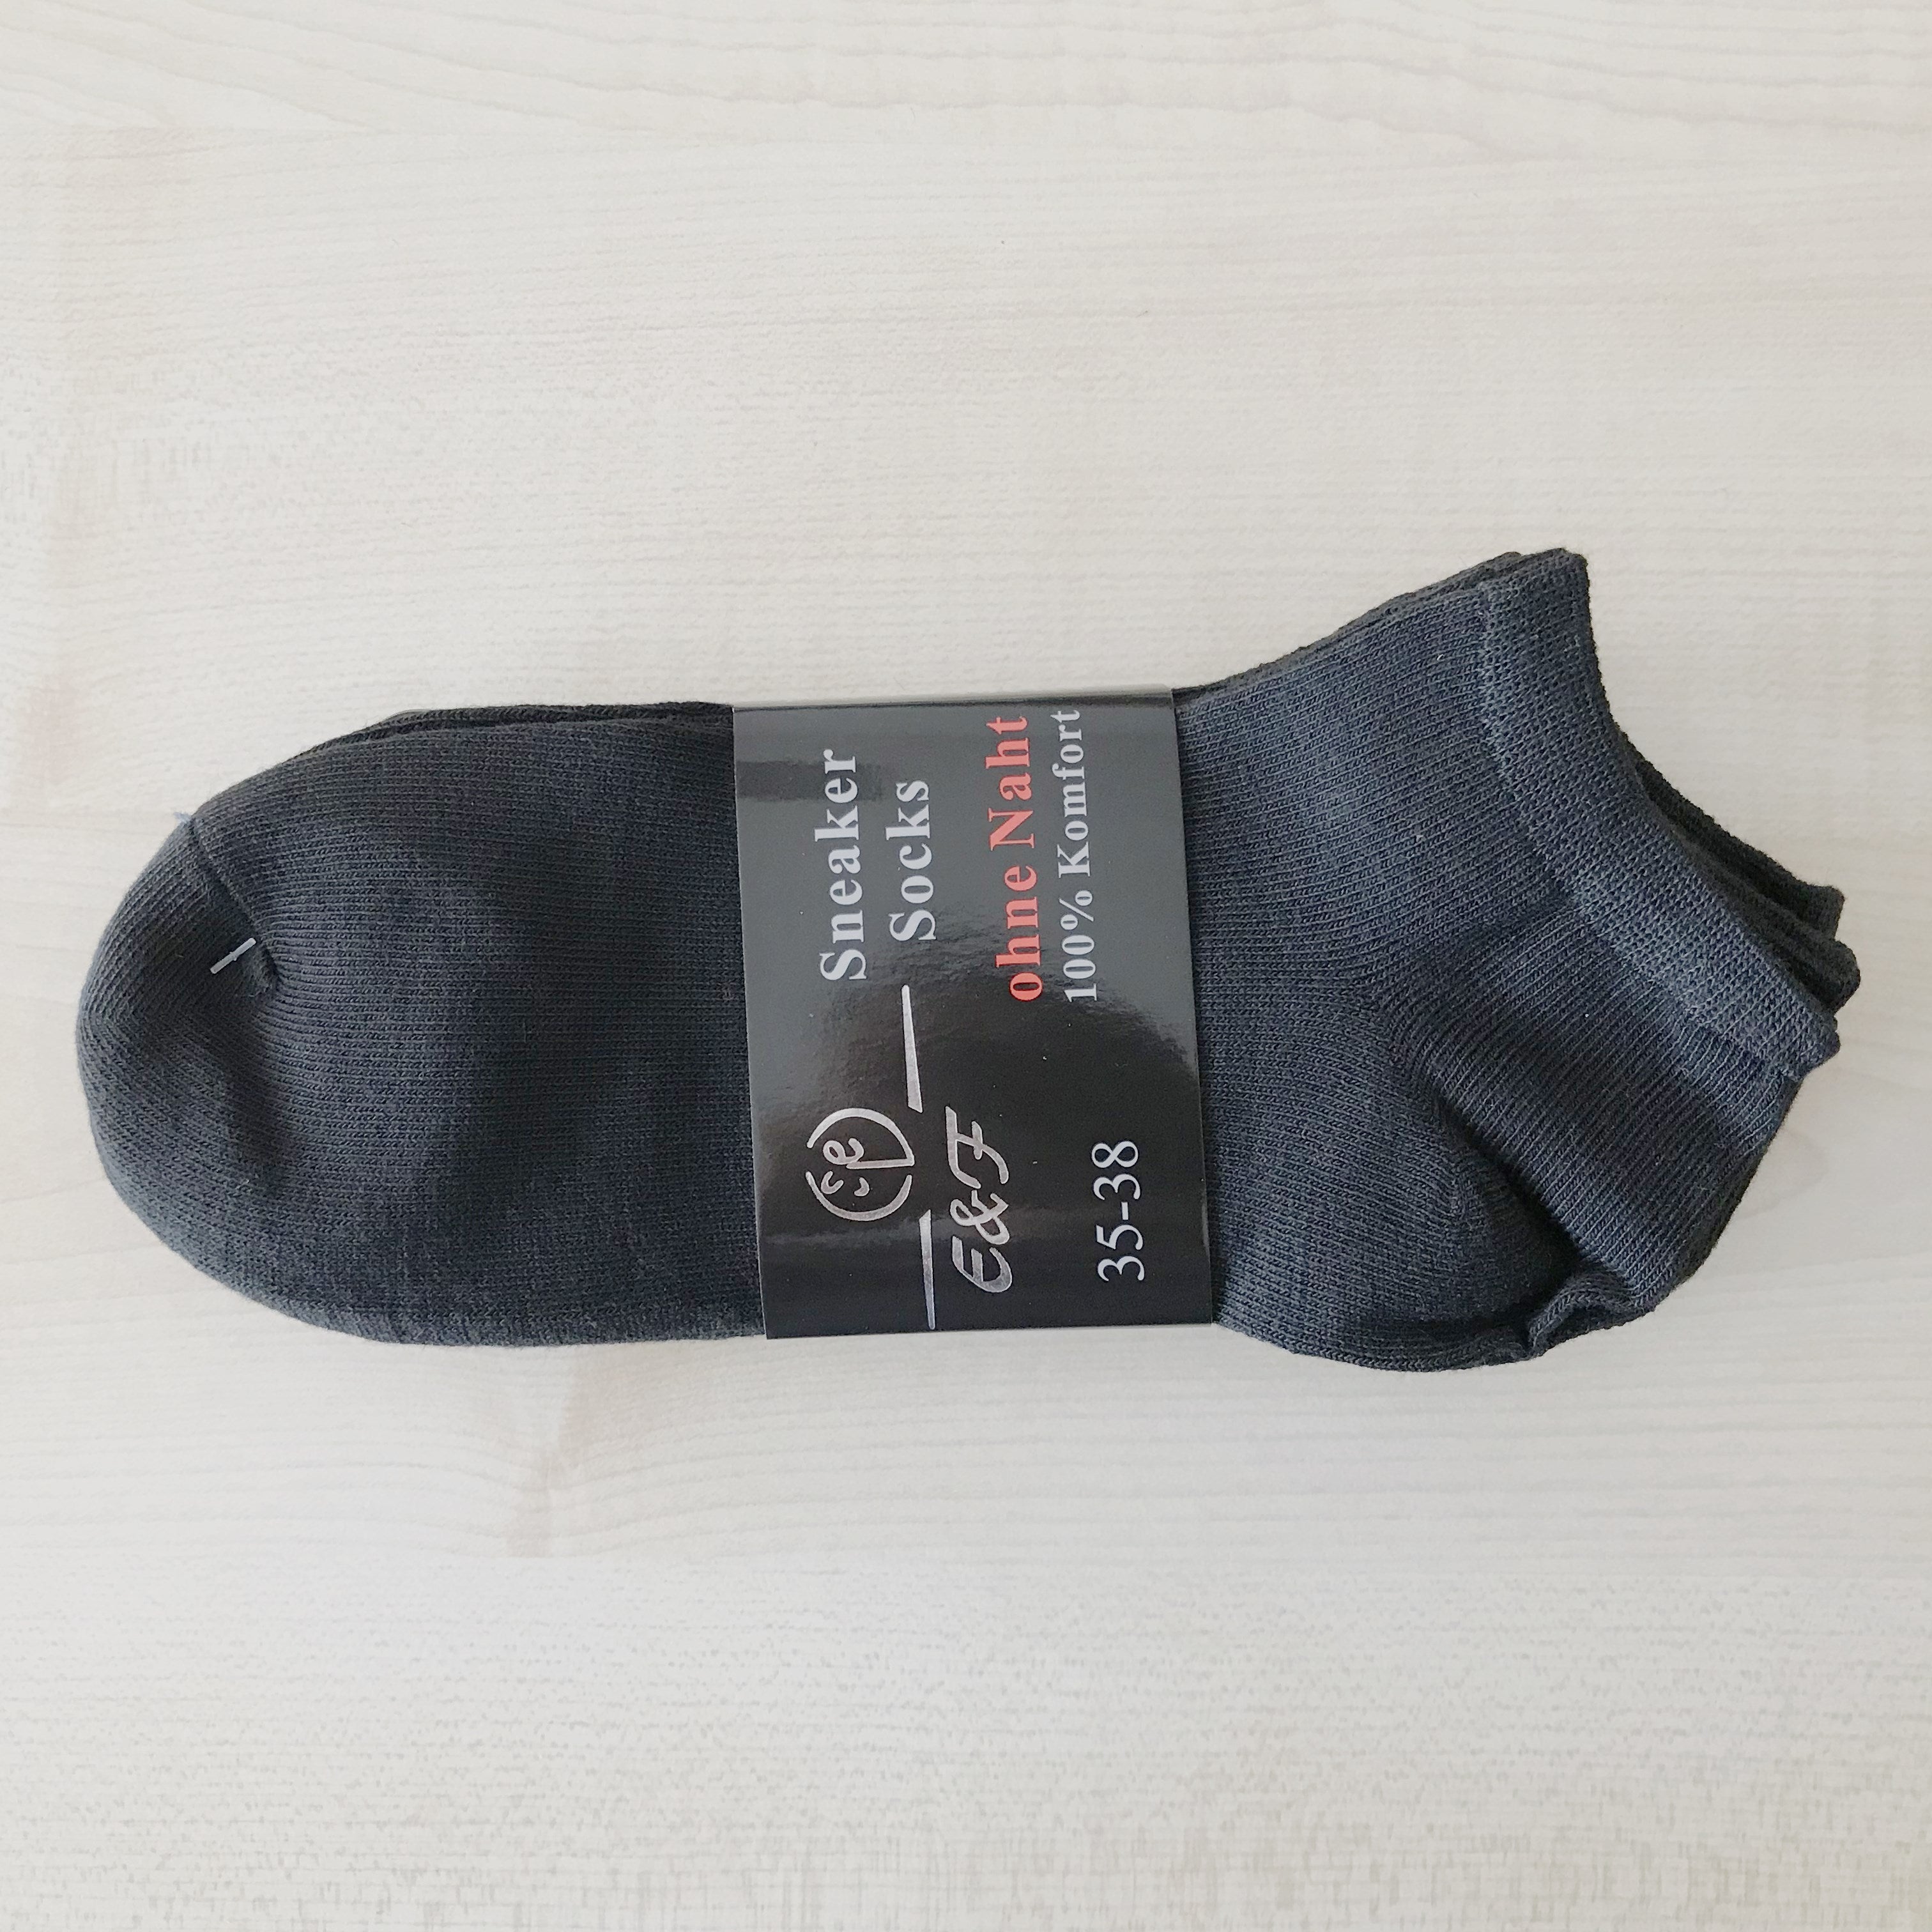 EF Frau-Socken 5 Paare Black